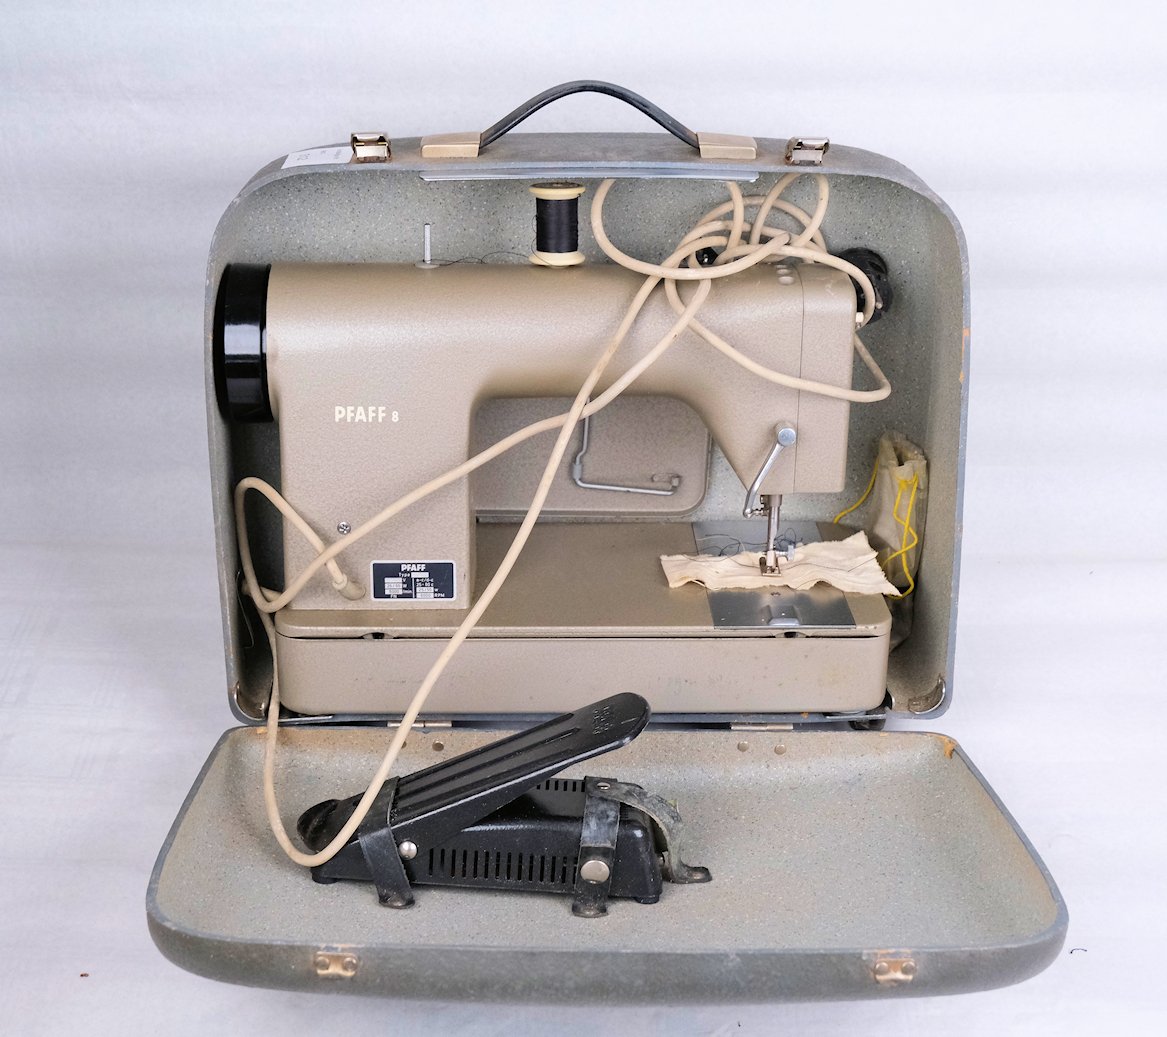 Haushaltsnähmaschine Pfaff Modell 8, Geradstich, Flachbett mit E-Motor (Freilichtmuseum Roscheider Hof CC0)